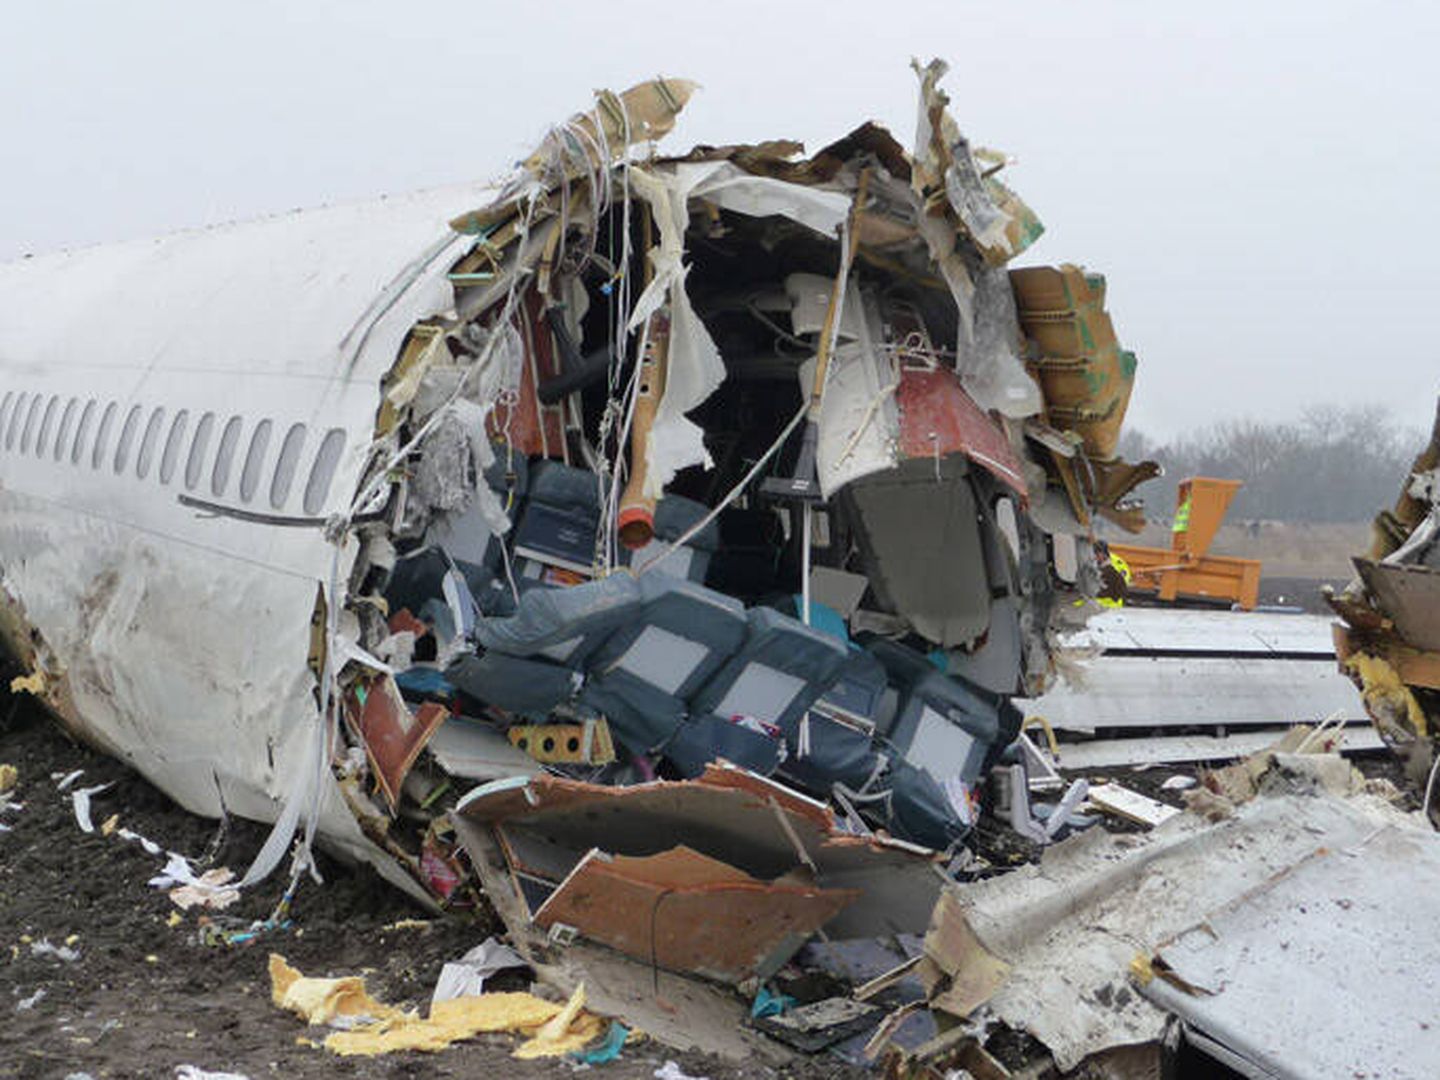 Imagen de la aeronave tras el accidente. (Informe Oficial)